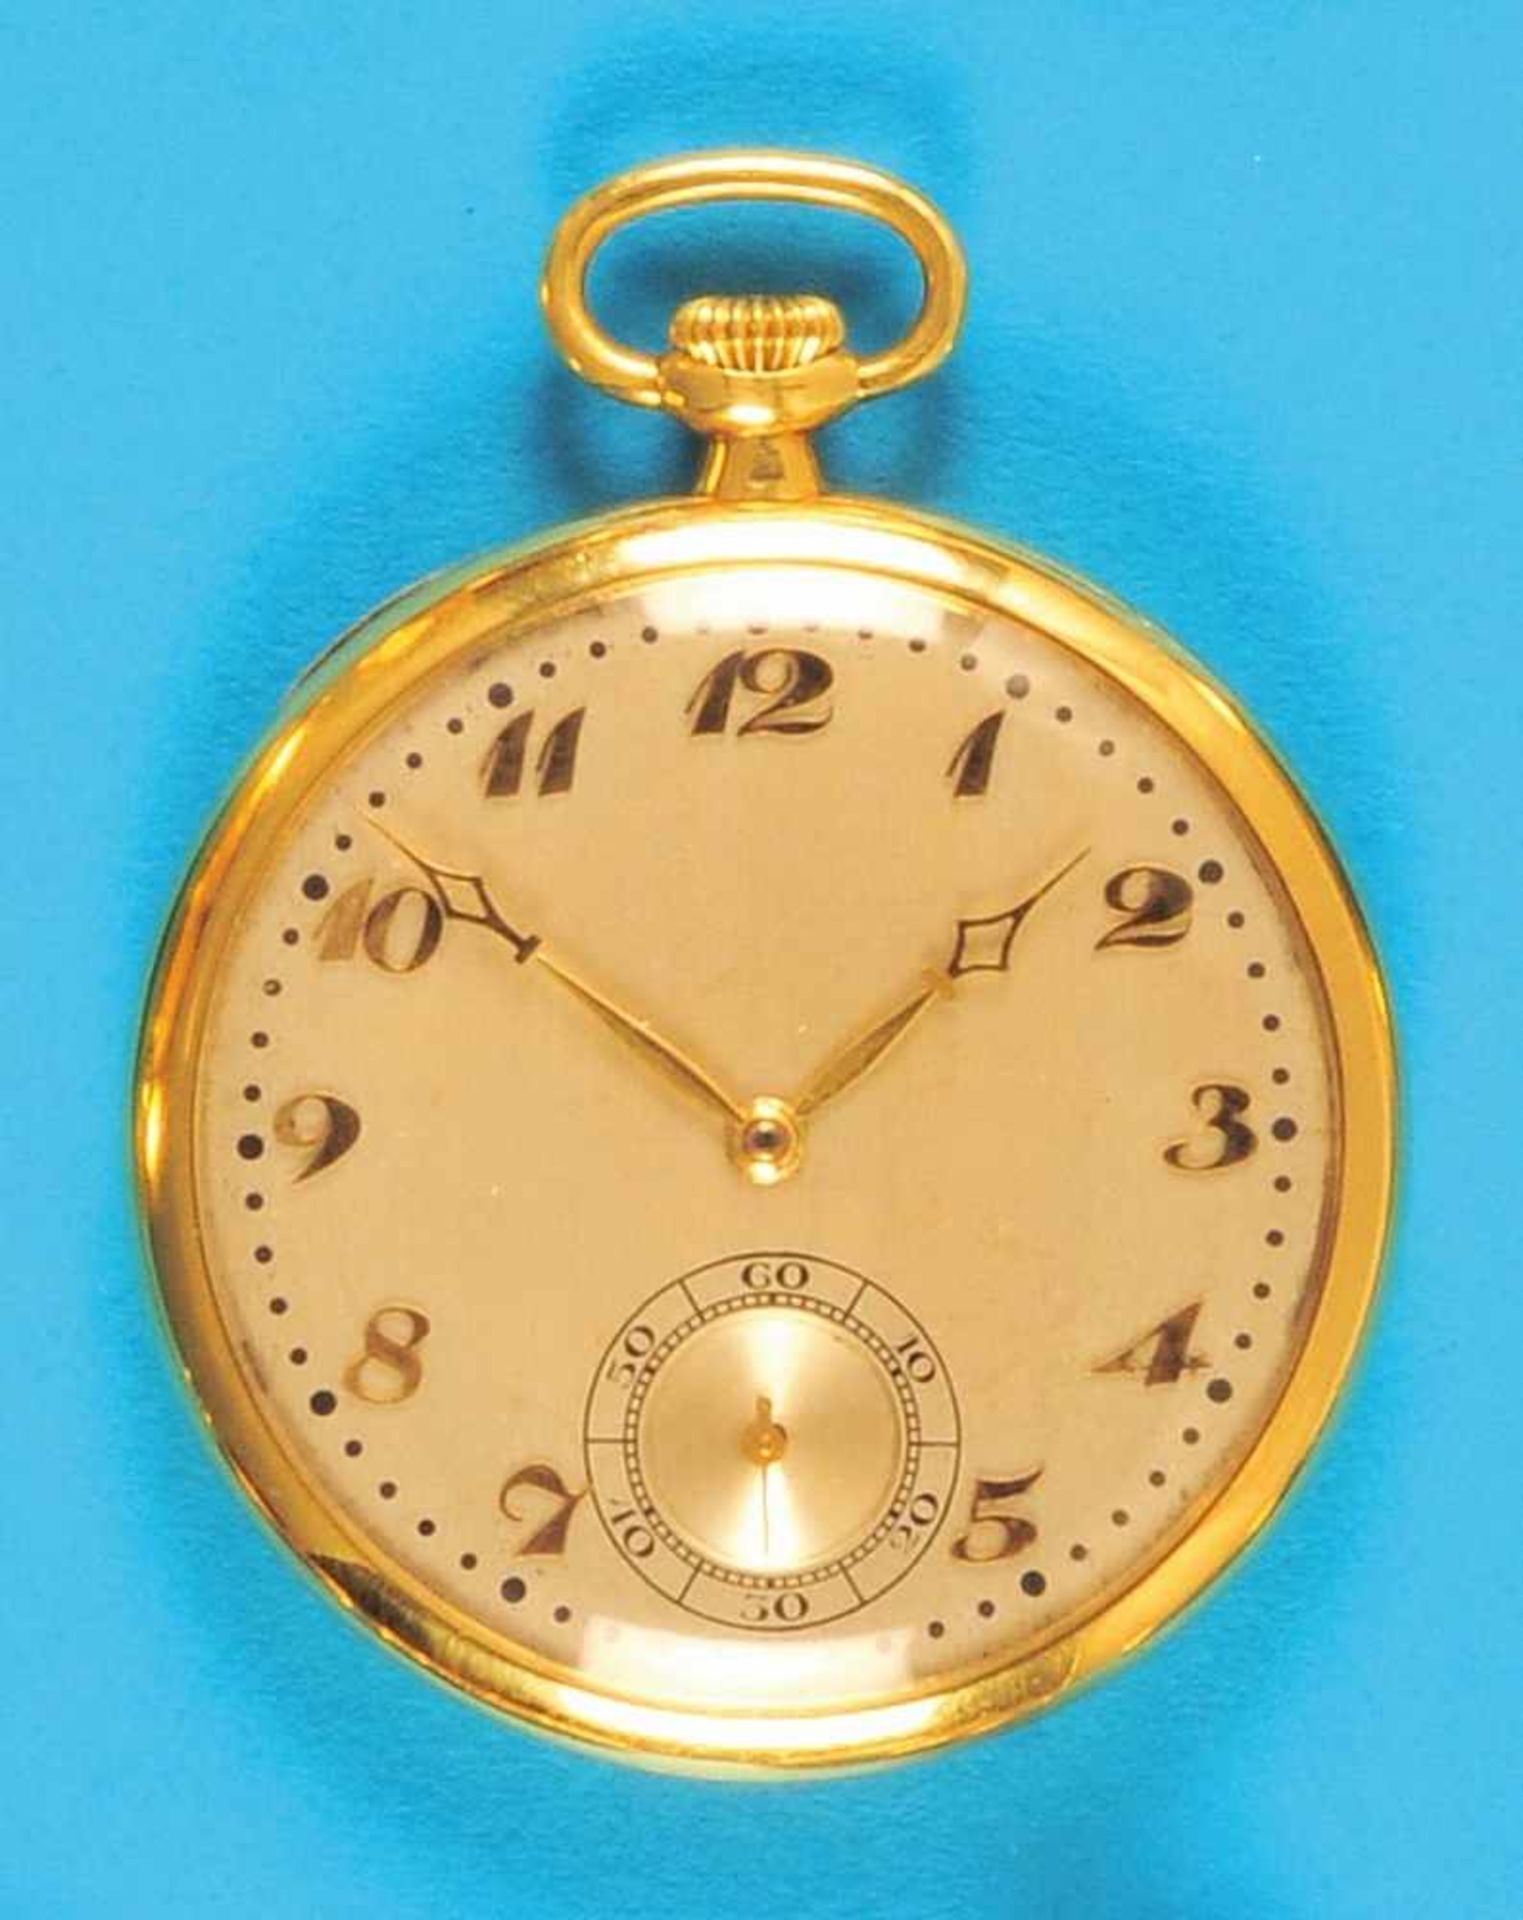 Golden tailcoat watch, Audemars Piquet & Co. Goldene Frackuhr, Audemars Piquet & Co., glattes 18- - Bild 2 aus 2